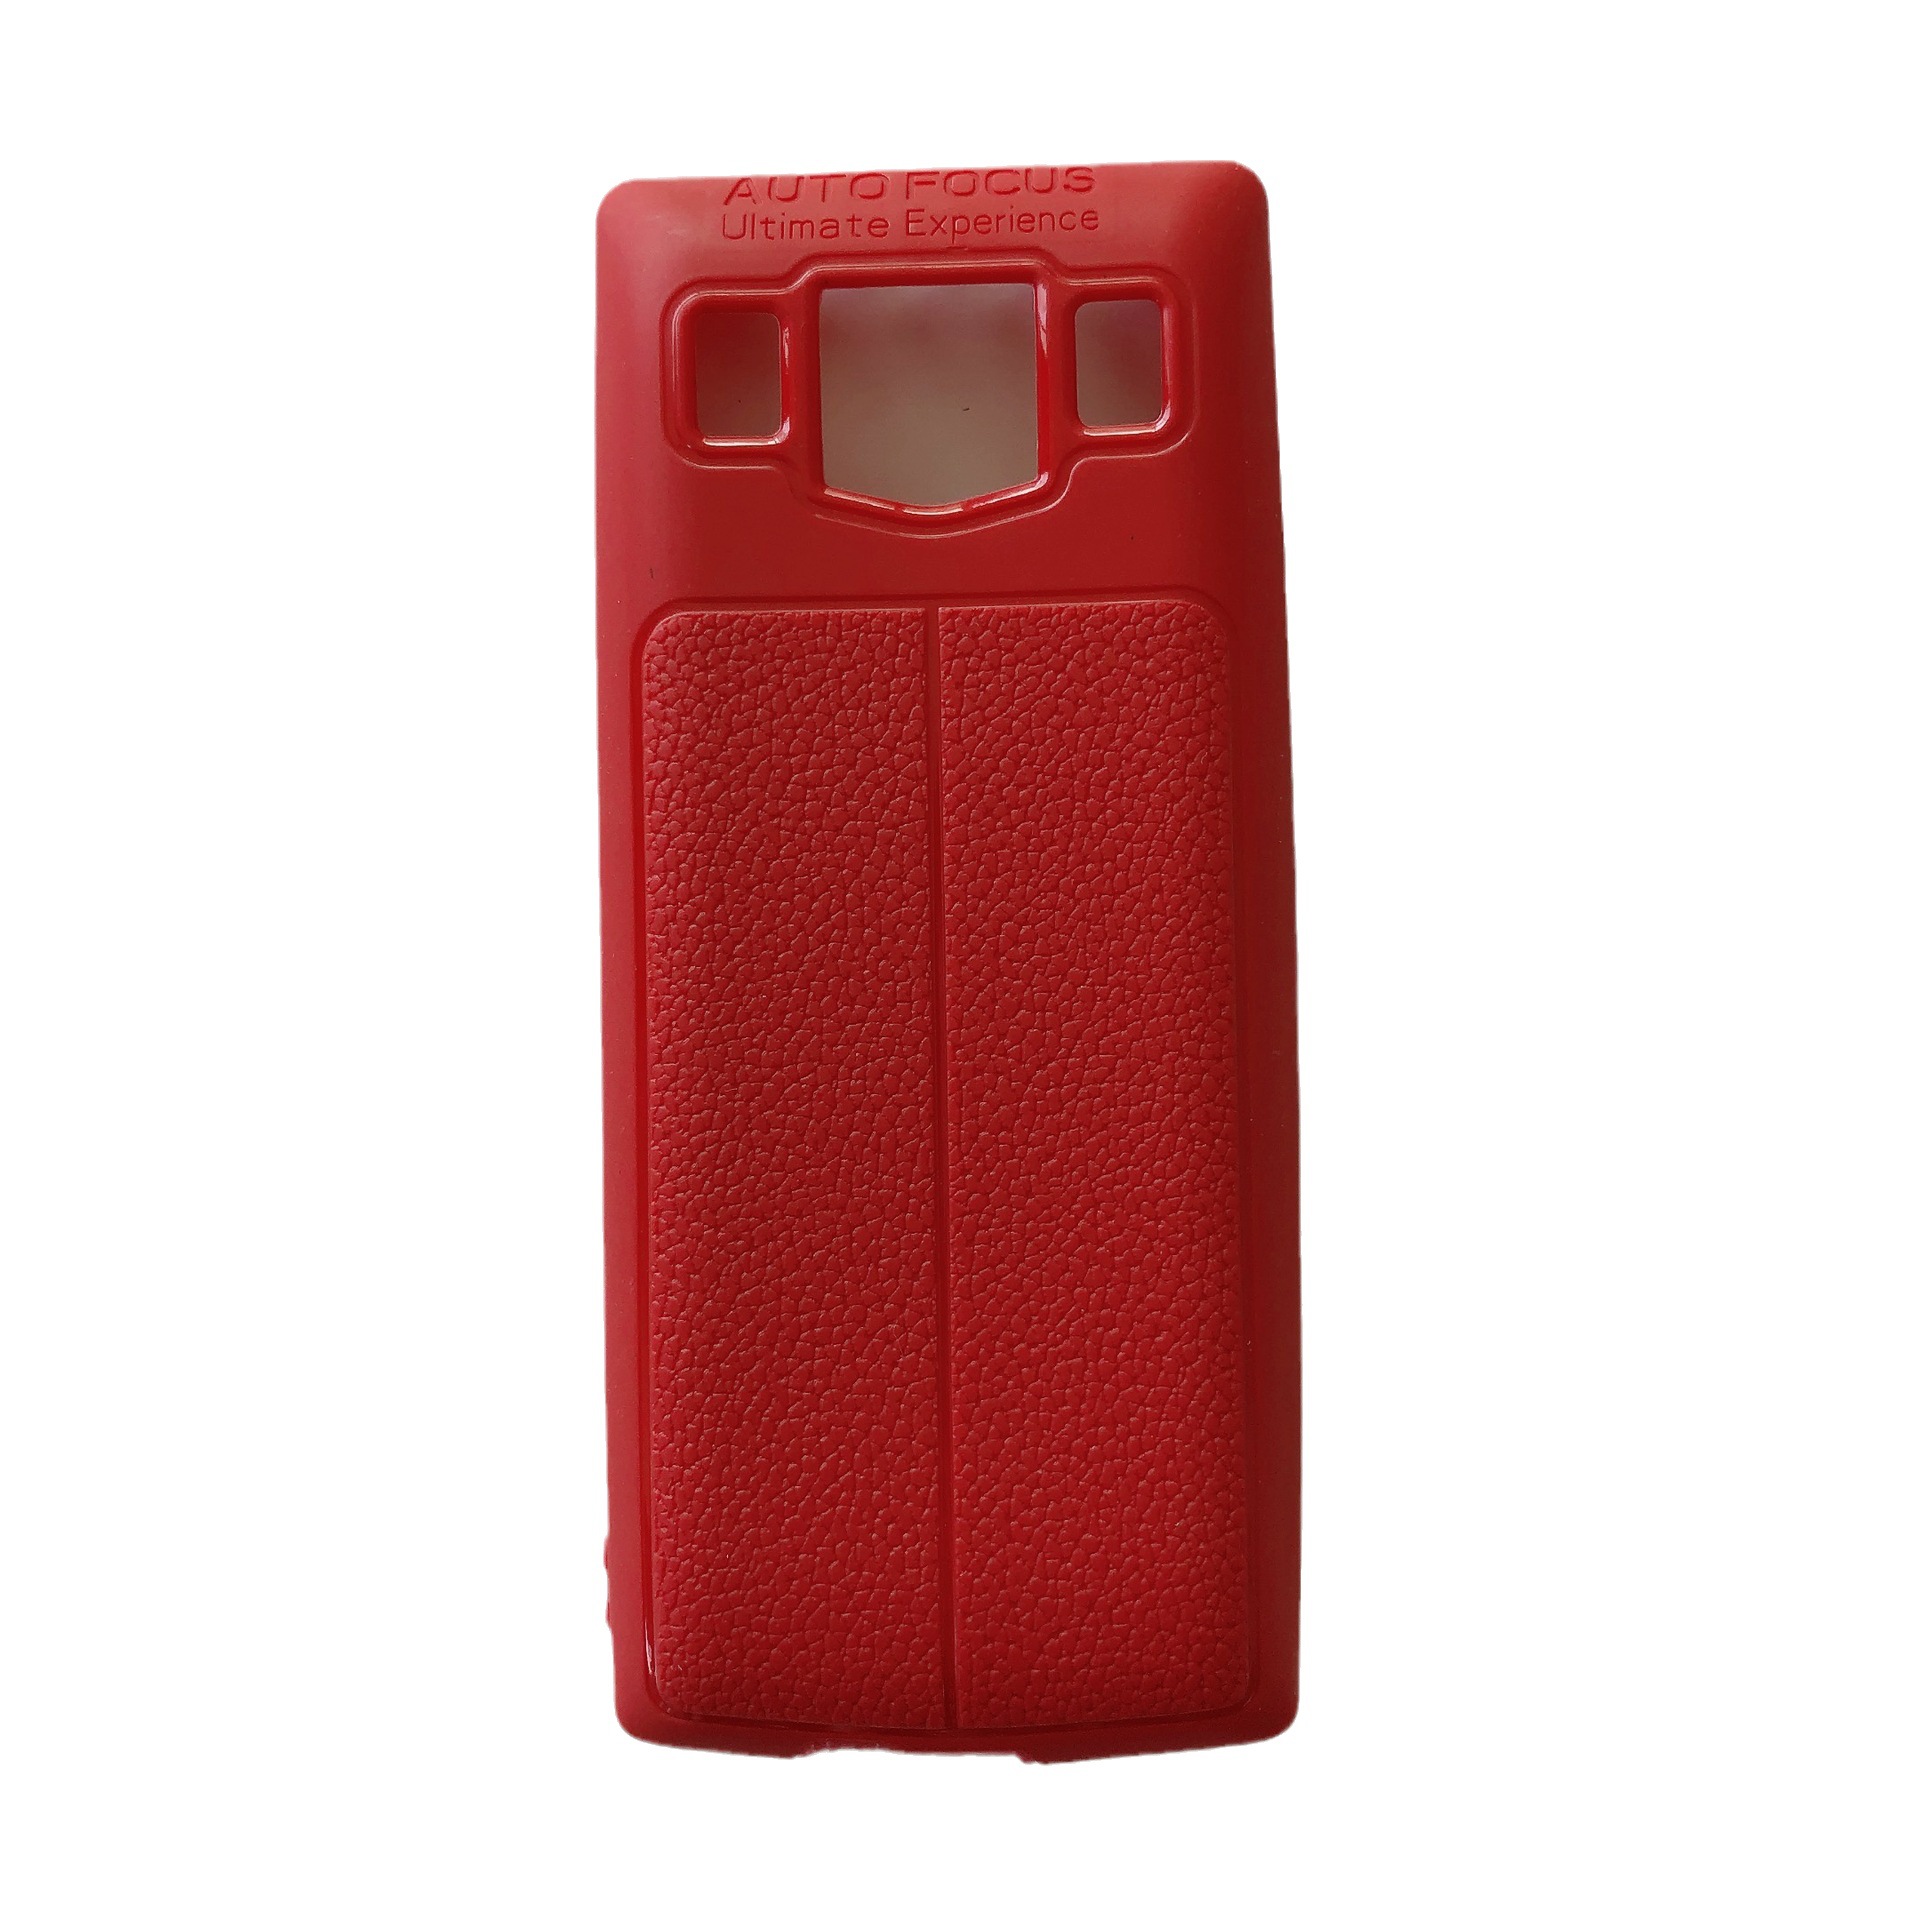 热销款小型号皮纹手机壳适用于NOKIA 5310  N106 2018TPU材质